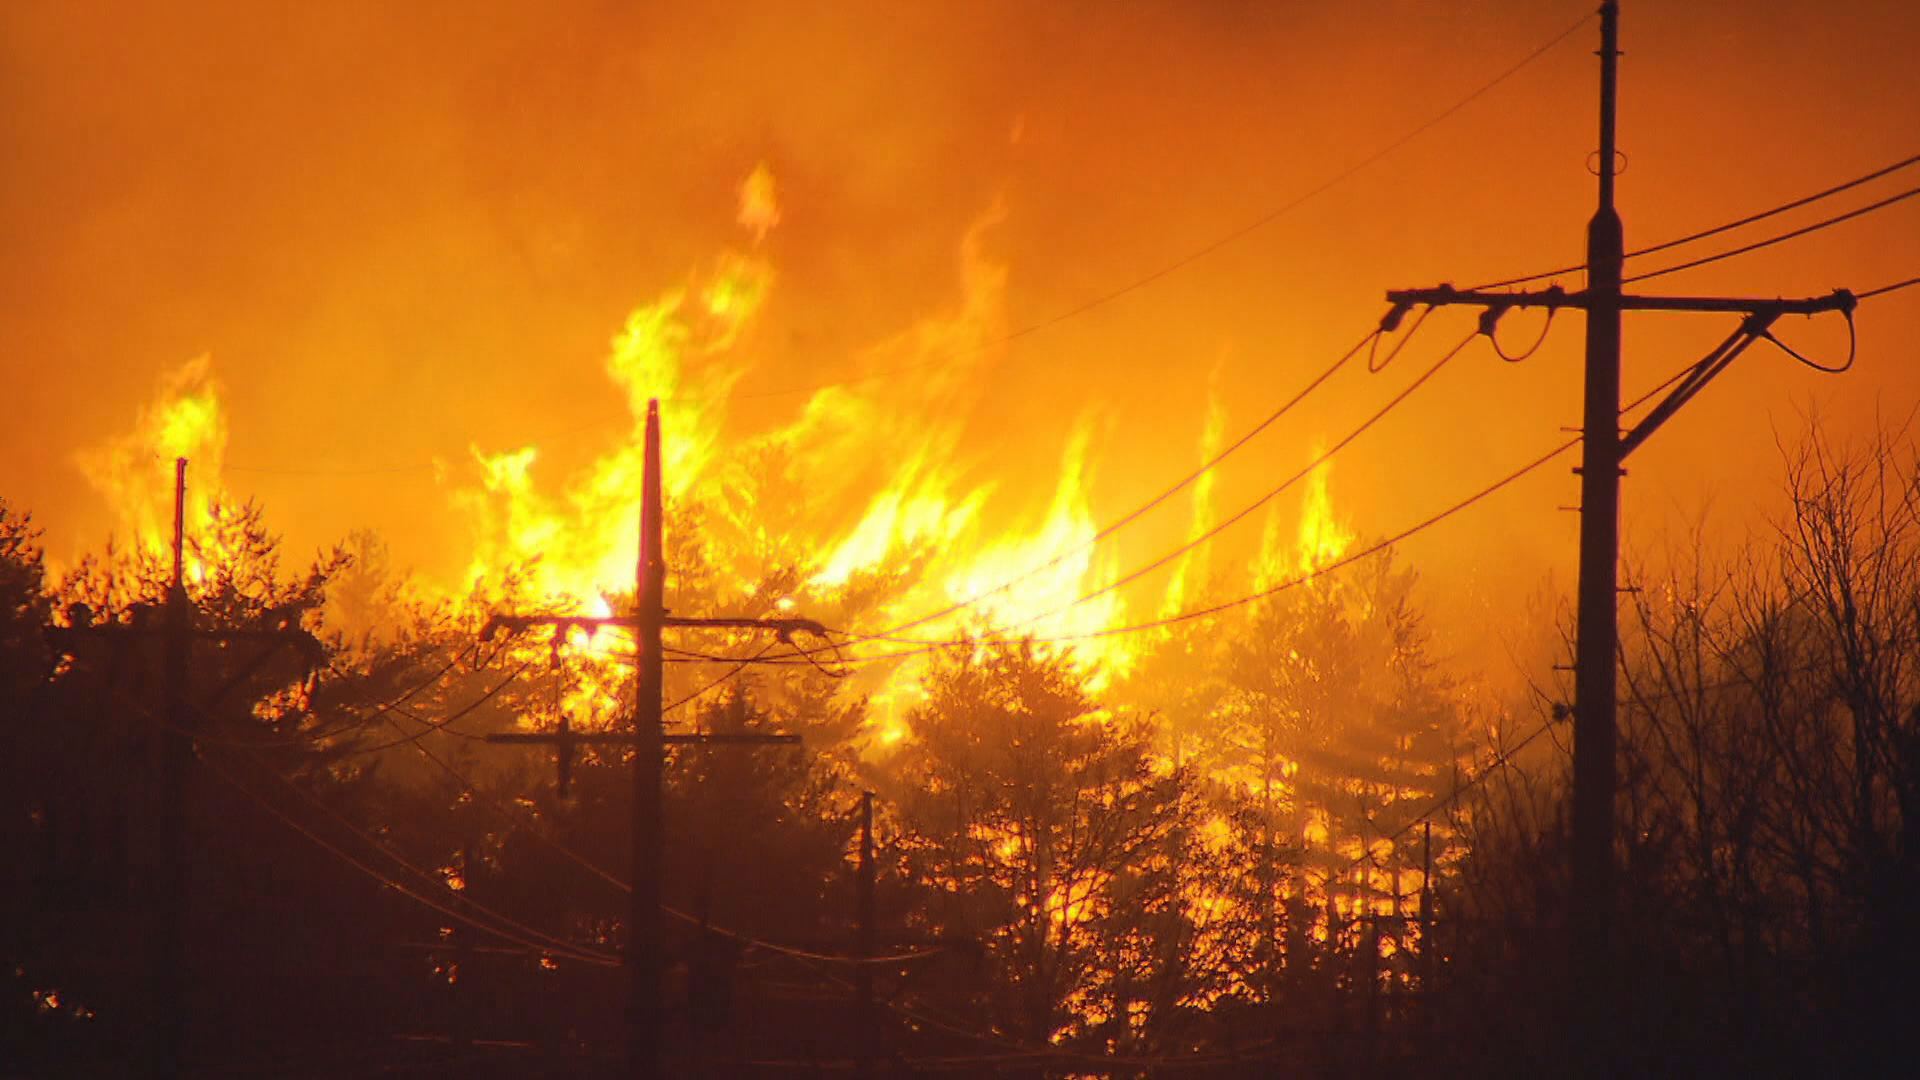  2019년 4월 4일 강원도 고성에서 발생한 산불